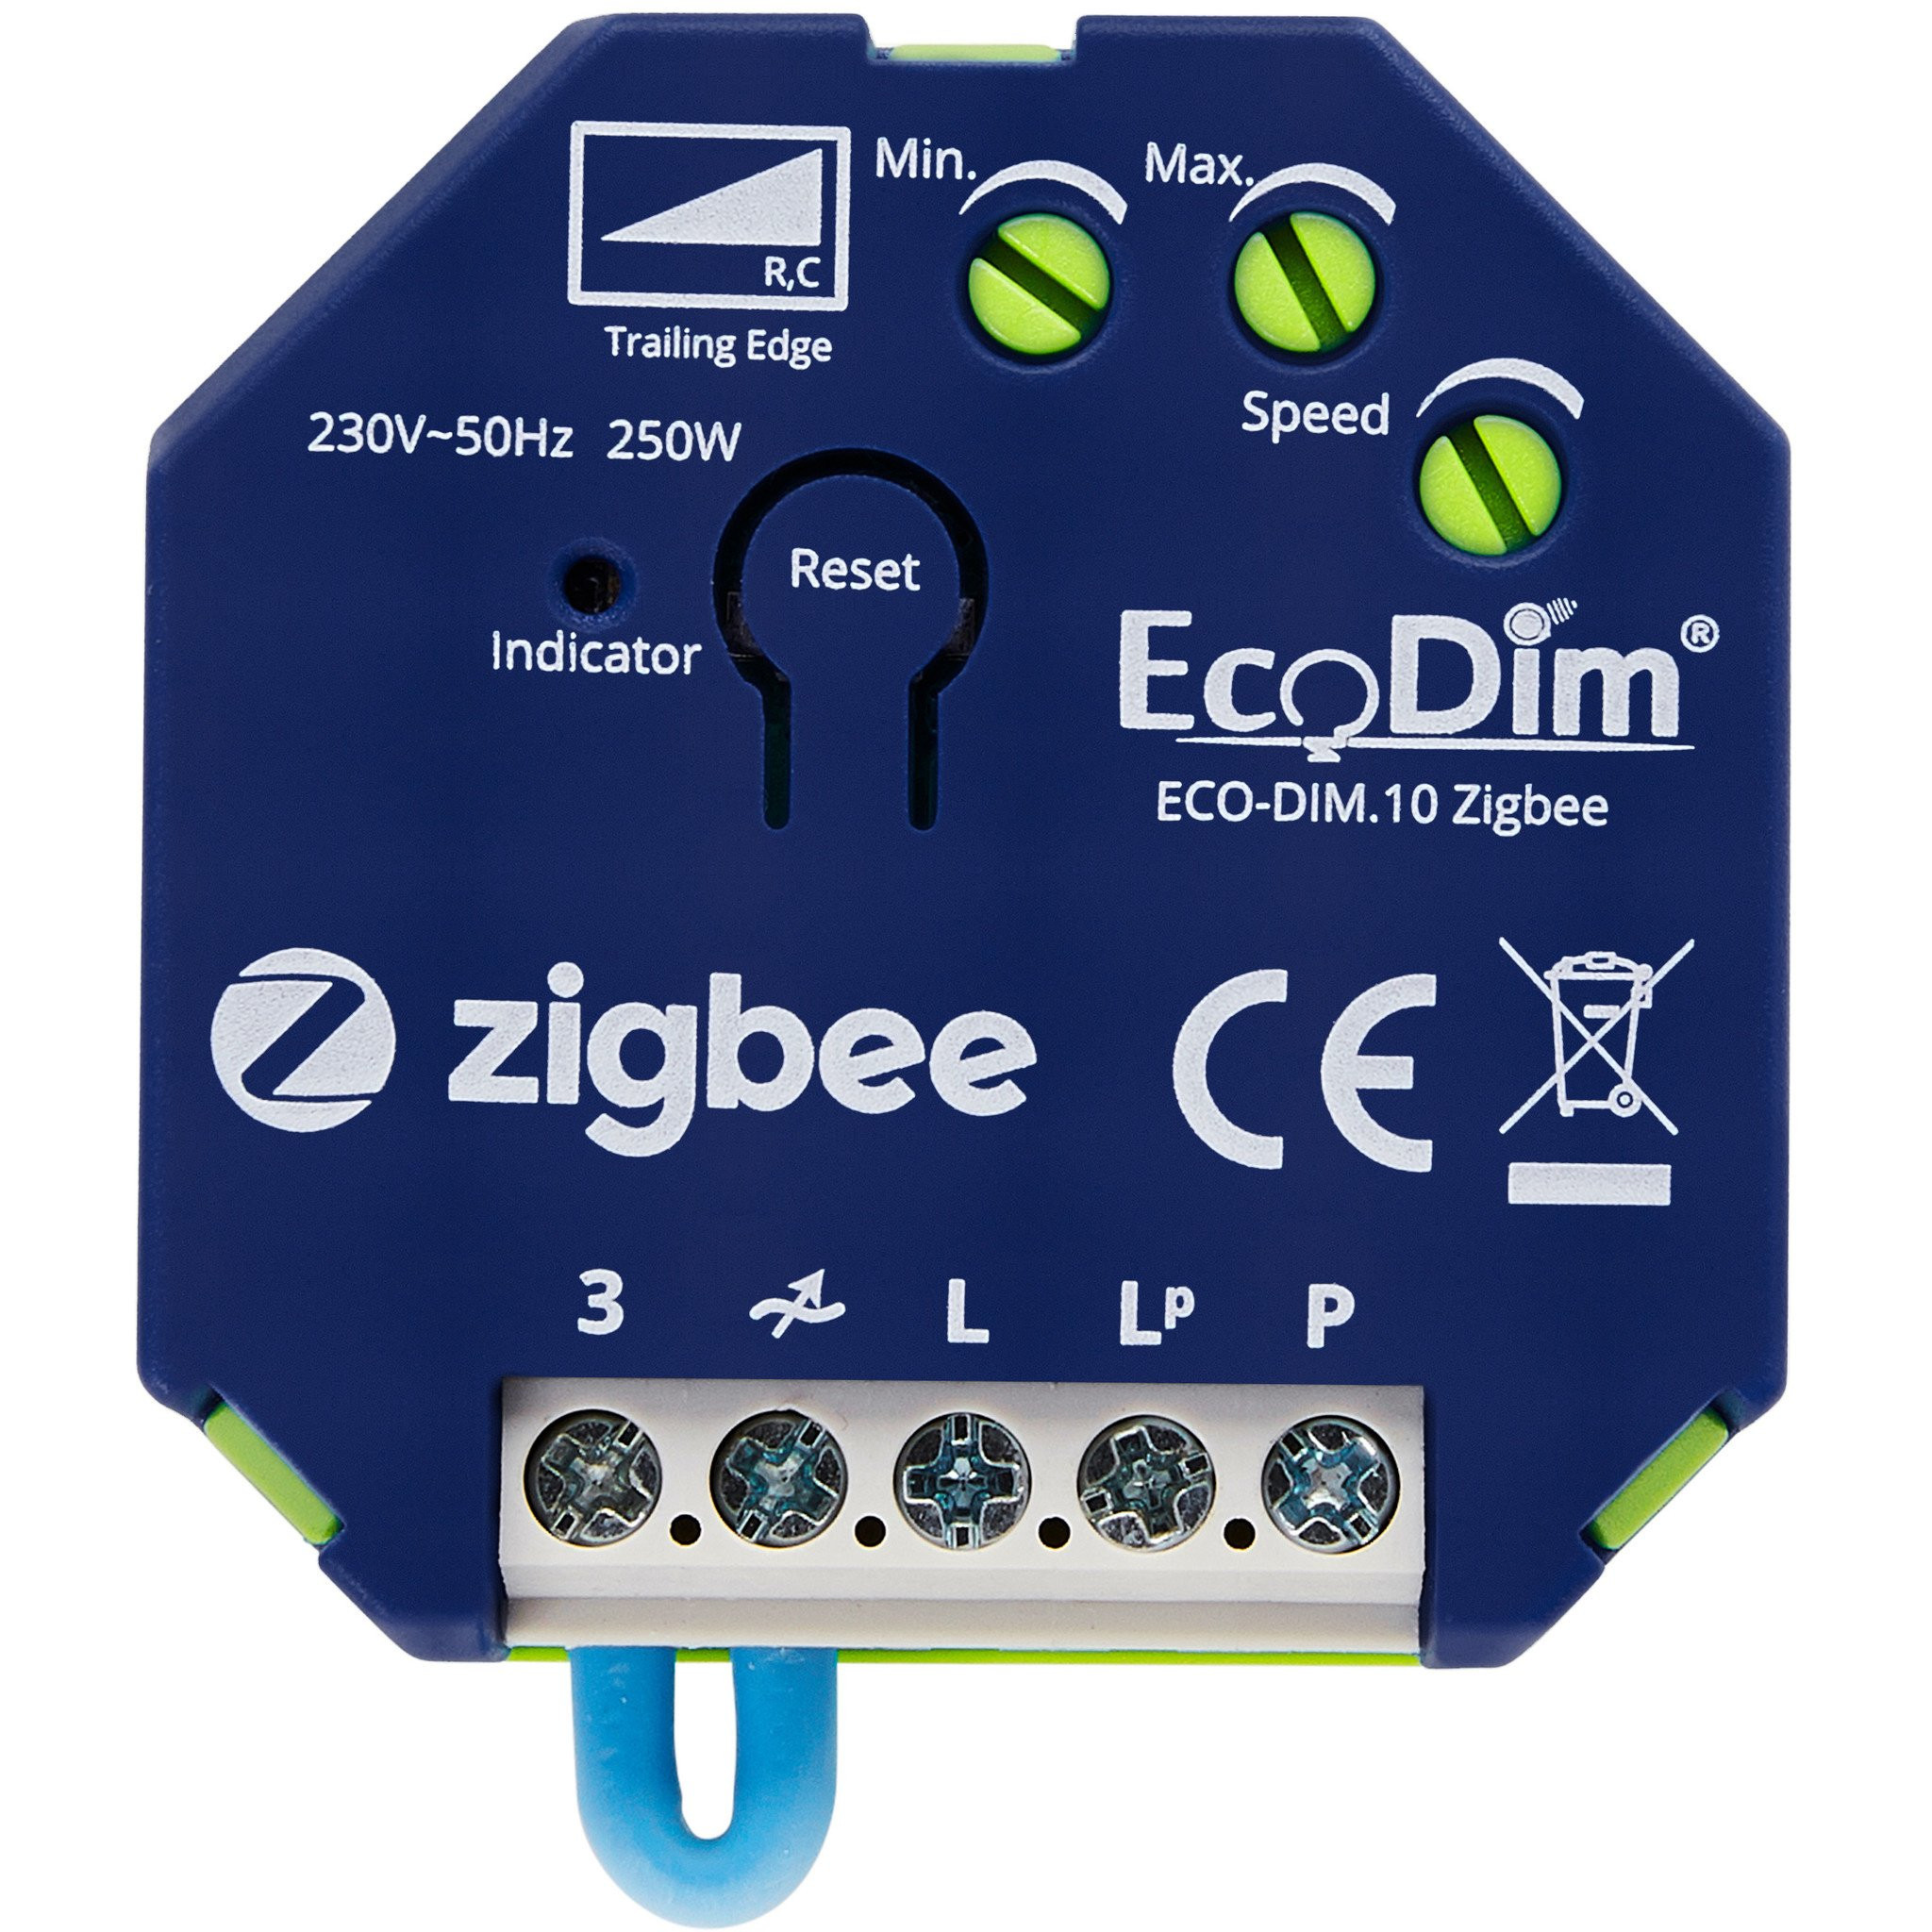 Ecodim Zigbee Inbouw Smart LED Dimmer - 0-250 Watt - Fase afsnijding - Compatibel met draadloze schakelaar - ECO-DIM.10 Zigbee